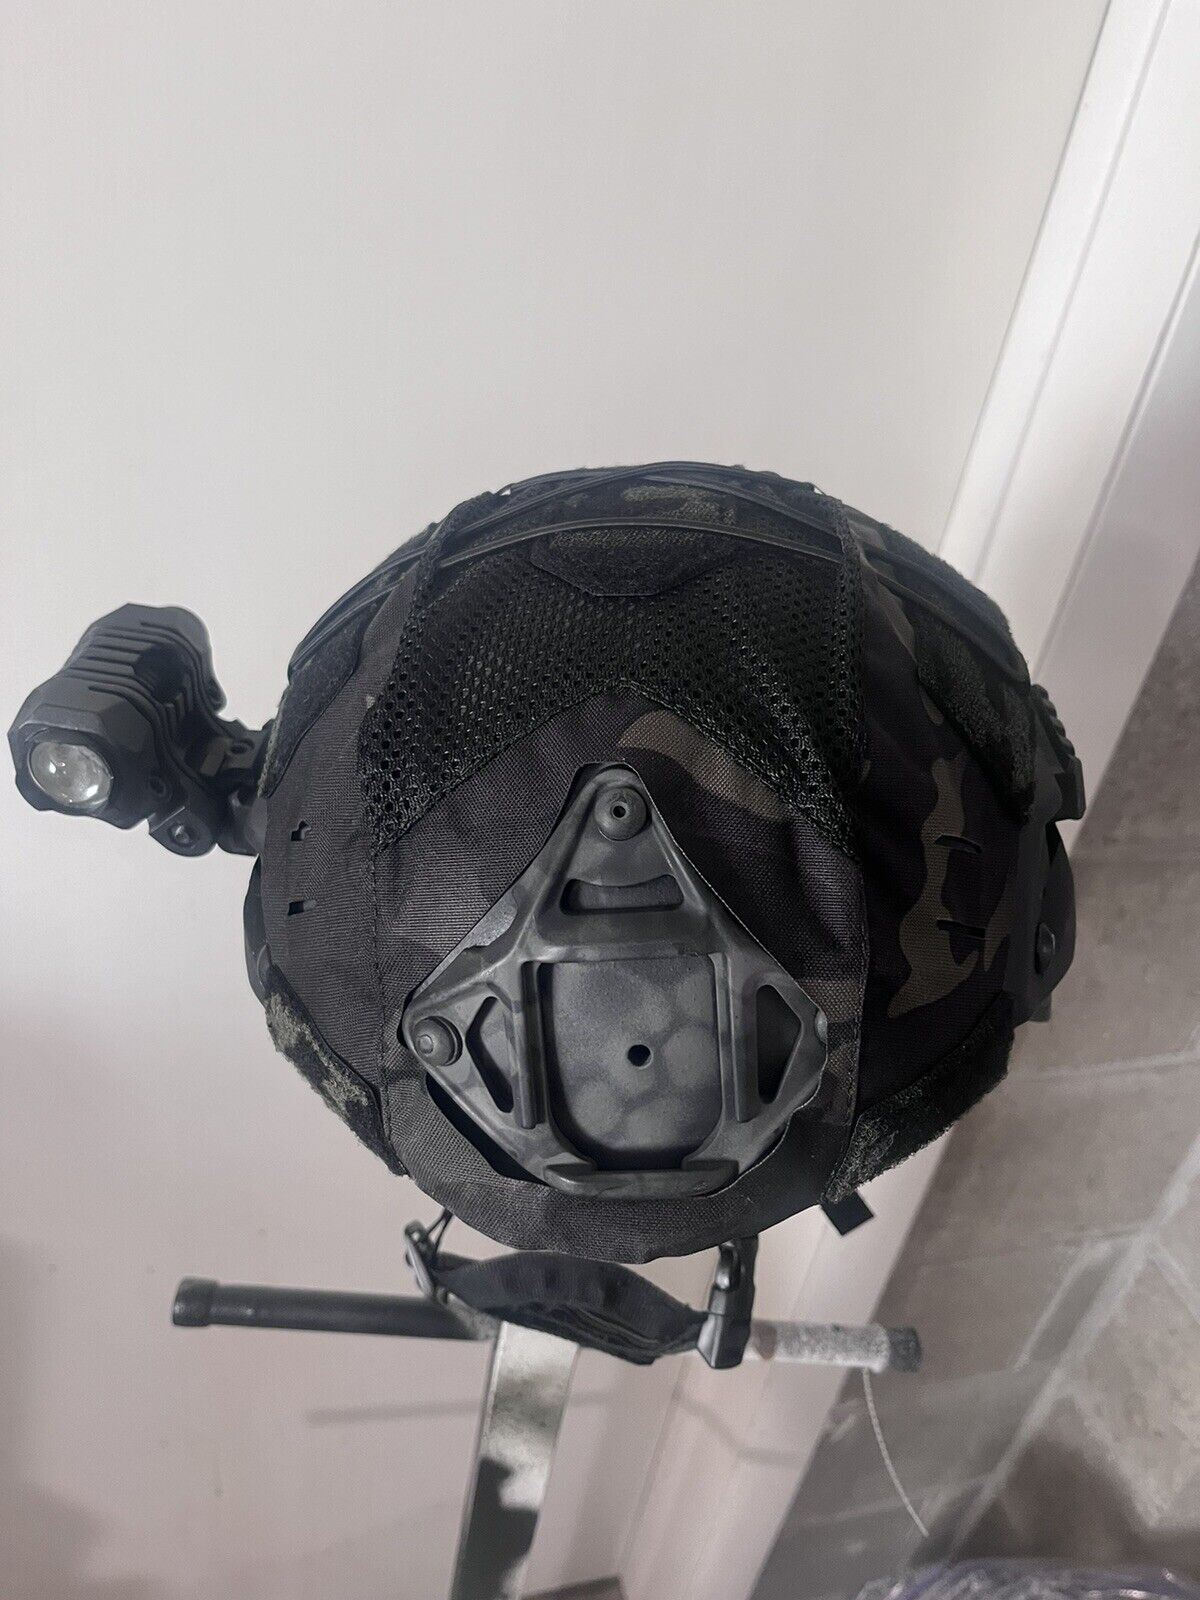 MSA Medium ACHelmet with Black Multicam Cover and Accessories